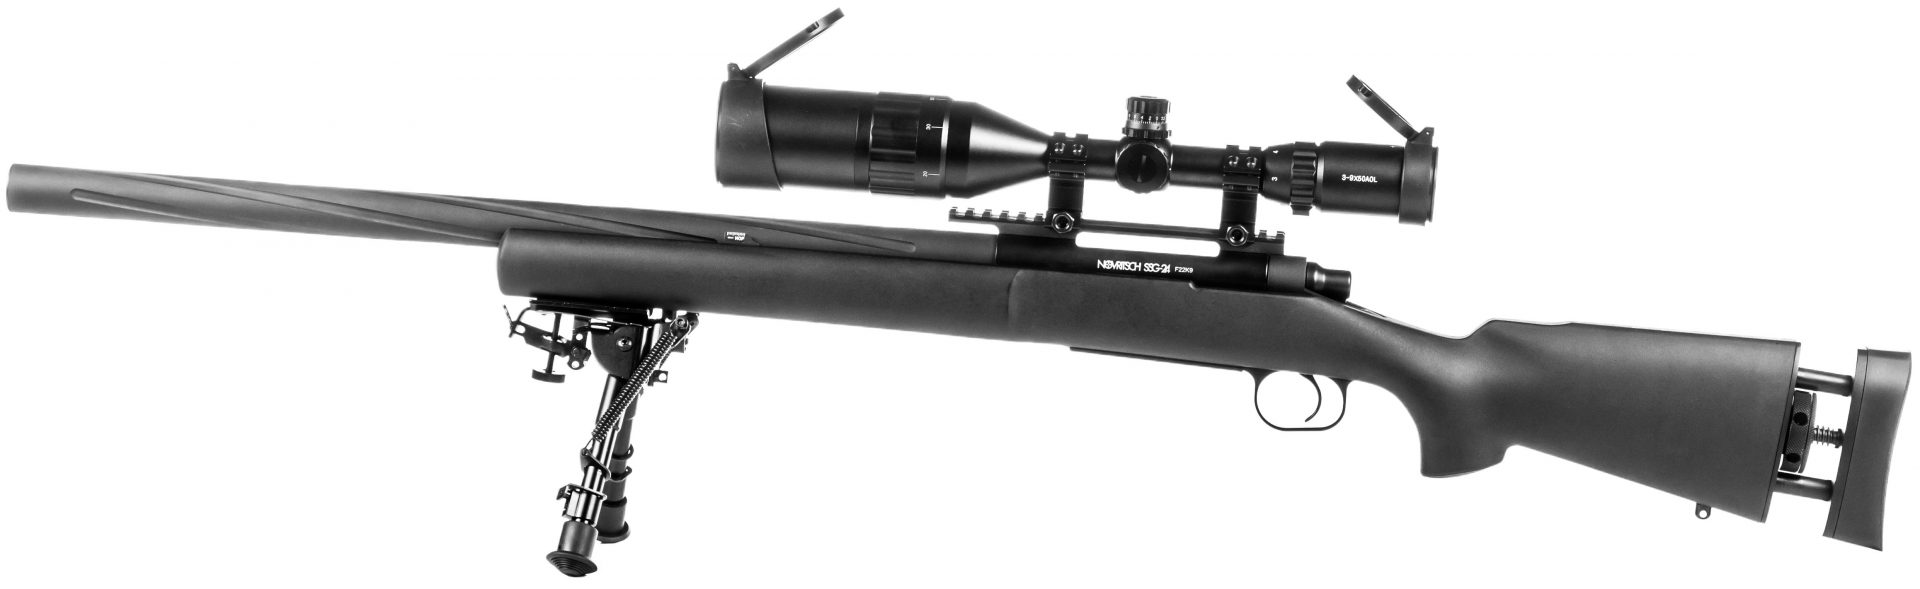 Novritsch SSG24 Airsoft Sniper Rifle - eHobbyAsia